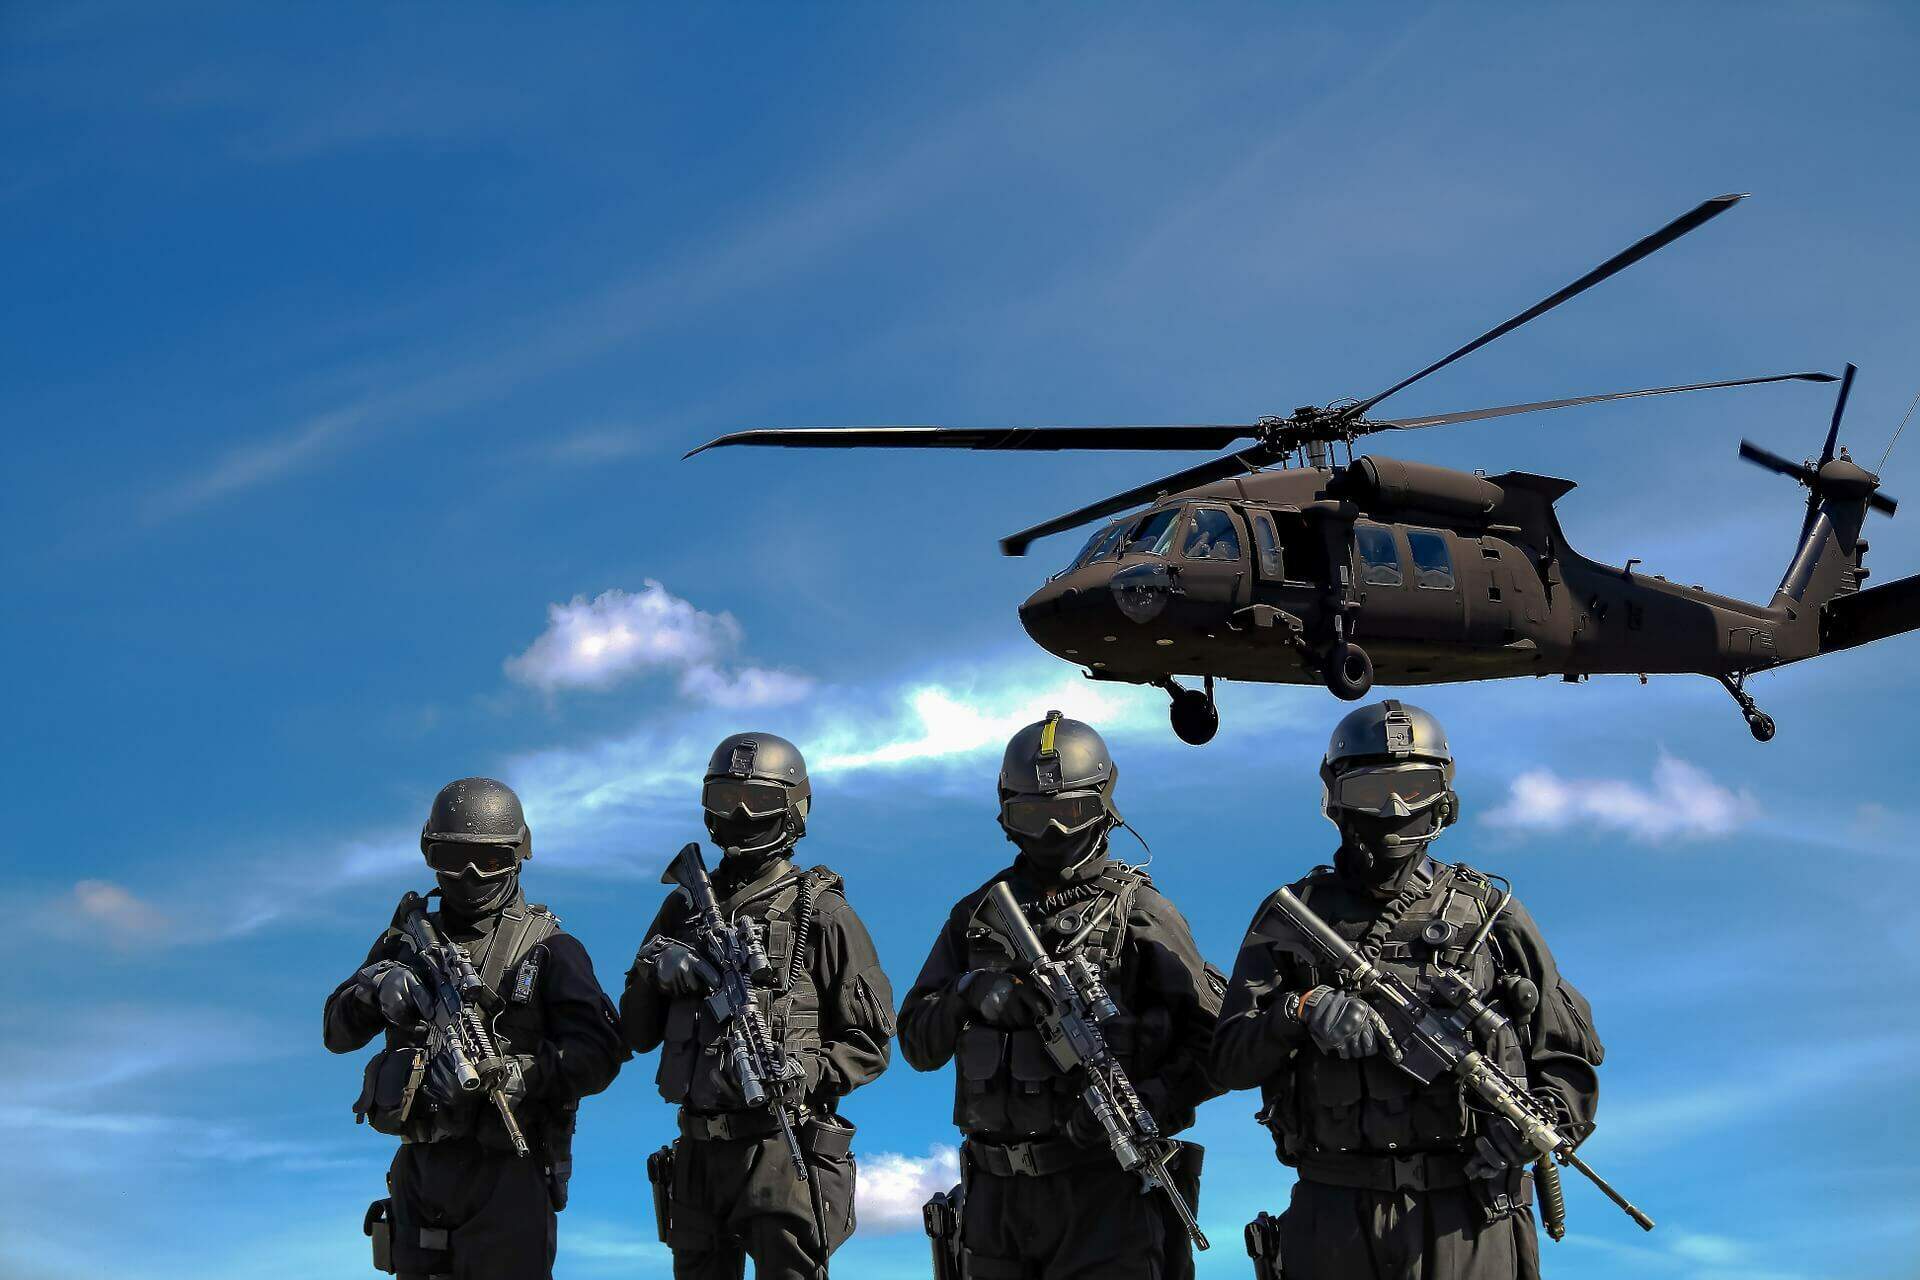 Imagem ilustrativa sobre o tema de intervenção militar internacional. Militares acompanhados de um helicoptero militar (Fonte: Pixabay)